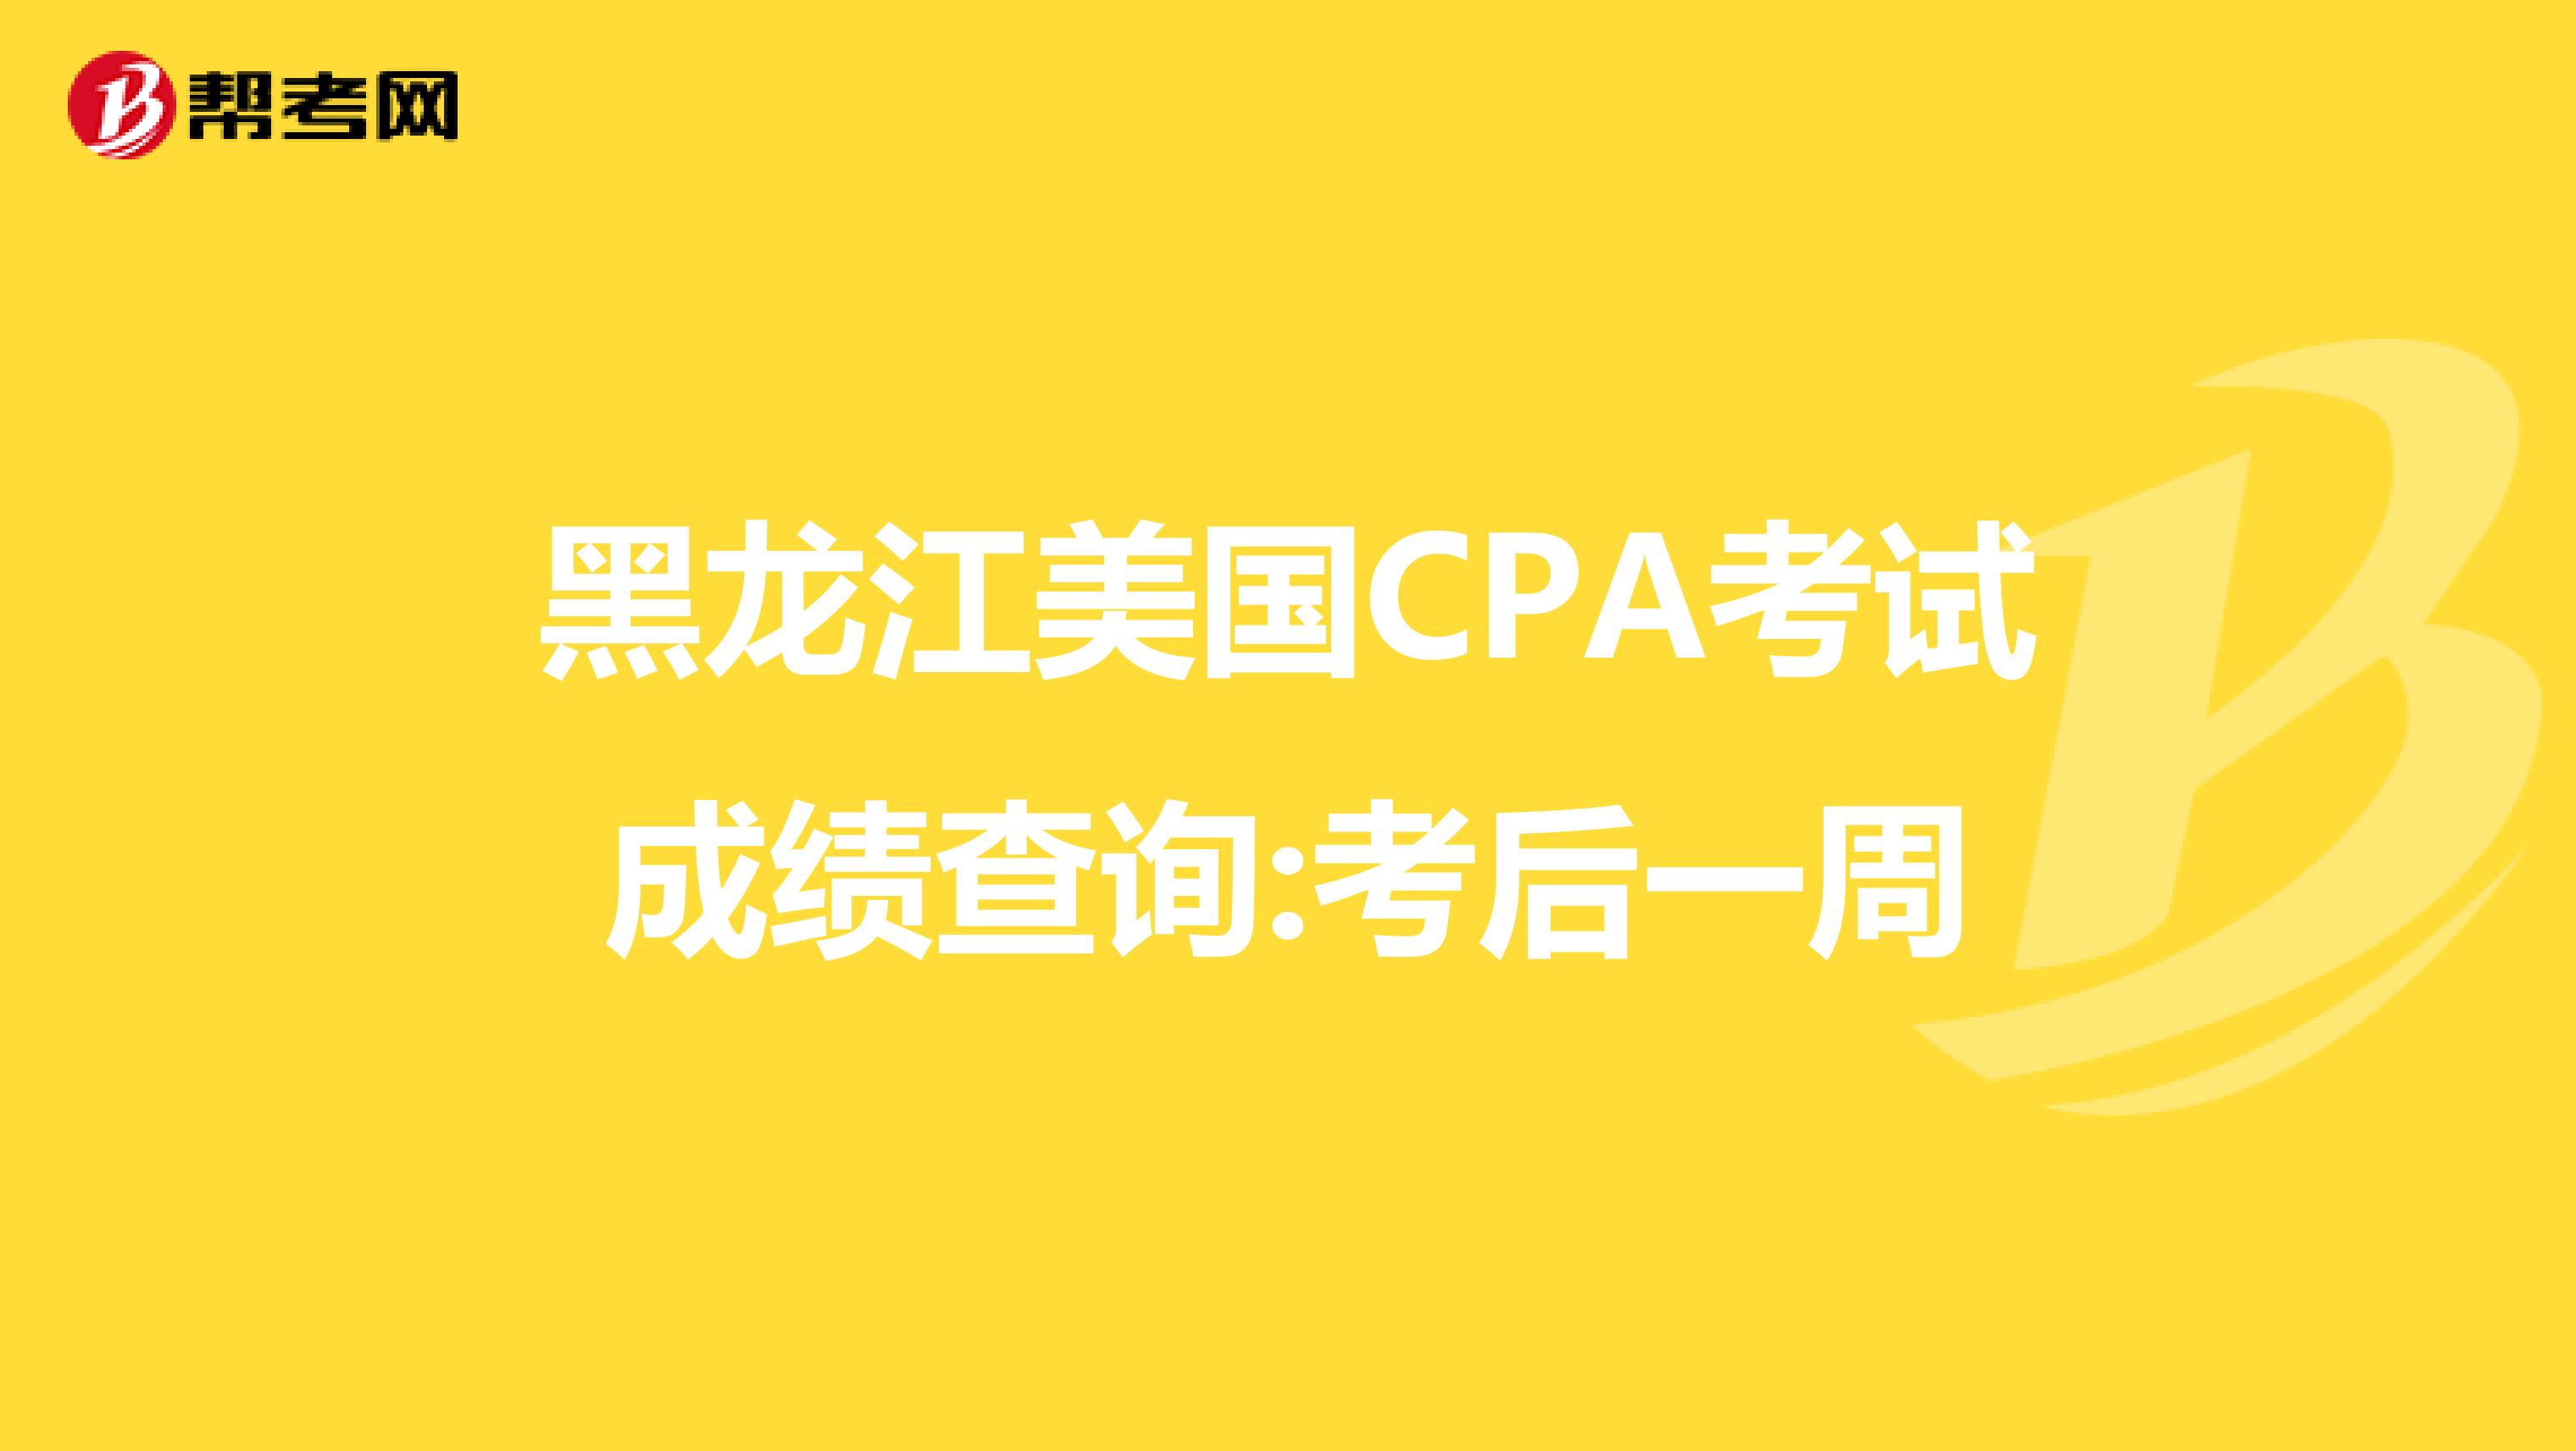 黑龙江美国CPA考试成绩查询:考后一周